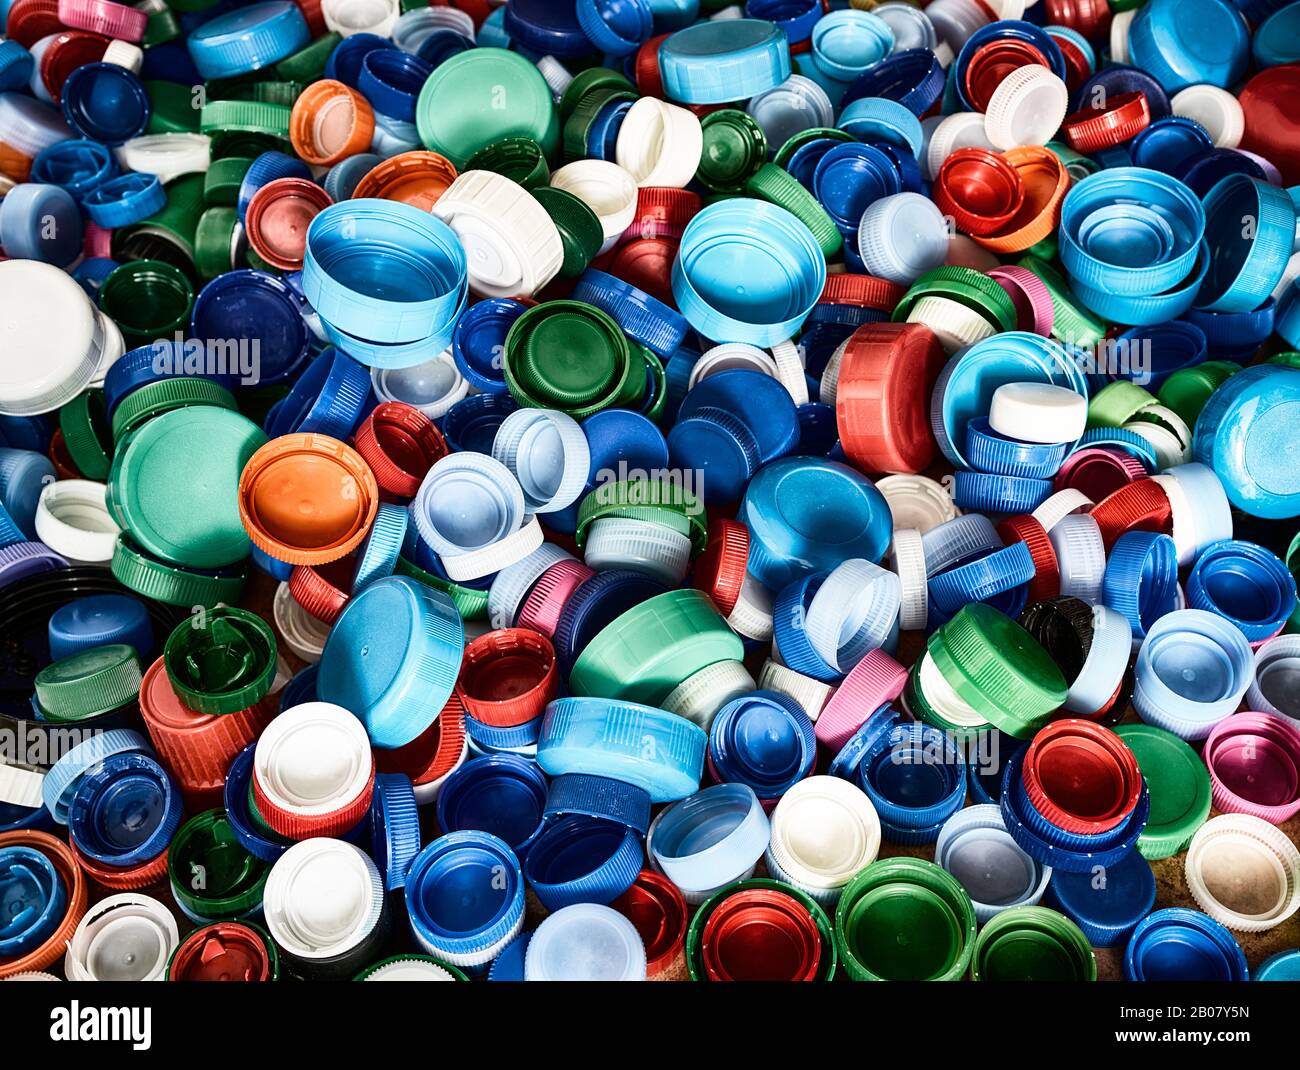 Hochauflösende Draufsicht im Hintergrund in verschiedenen Farben und Größen Kunststoff-Flaschenverschlüsse auf dem Boden. Stockfoto